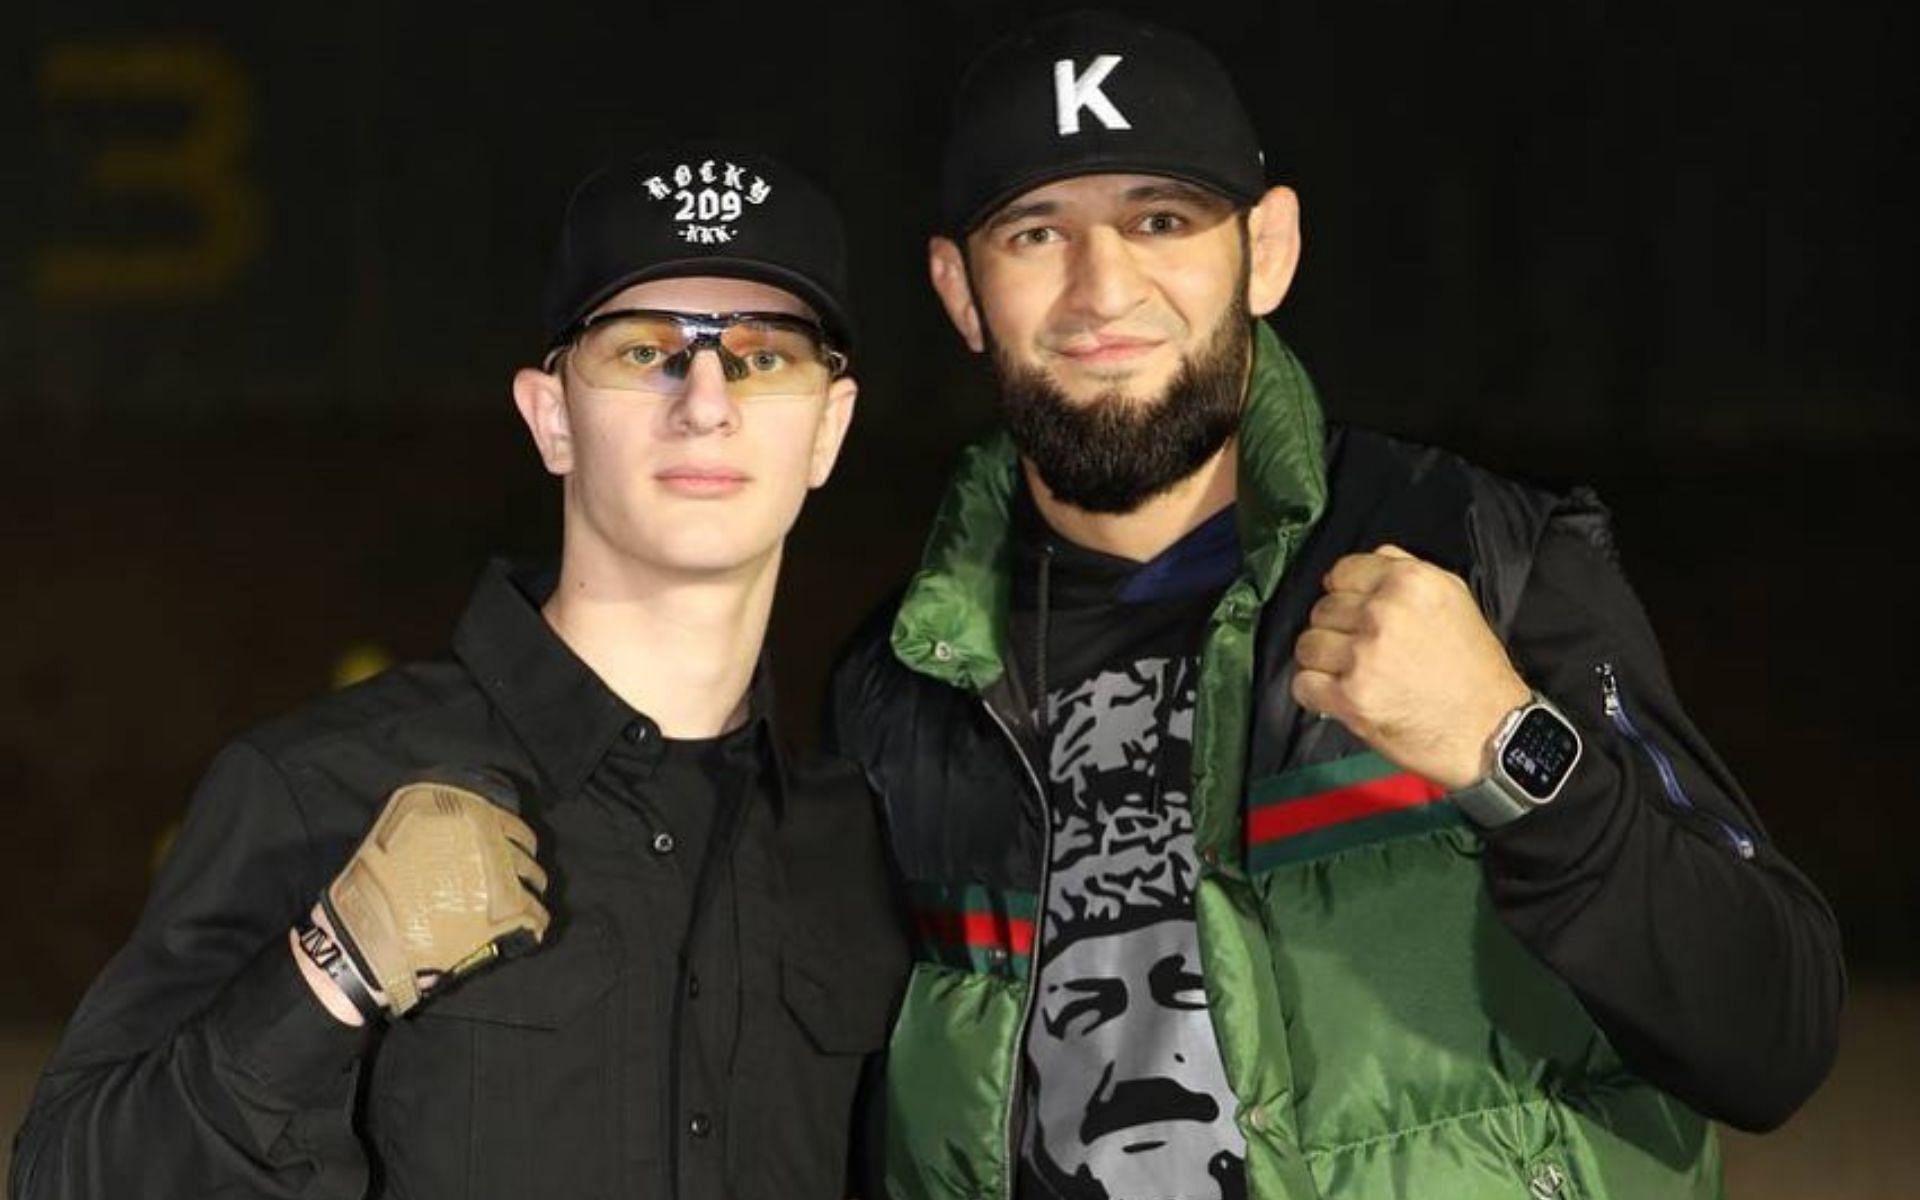 Ali Kadyrov (left) Khamzat Chimaev (right) [Image courtesy @khamzat_chimaev Instagram]